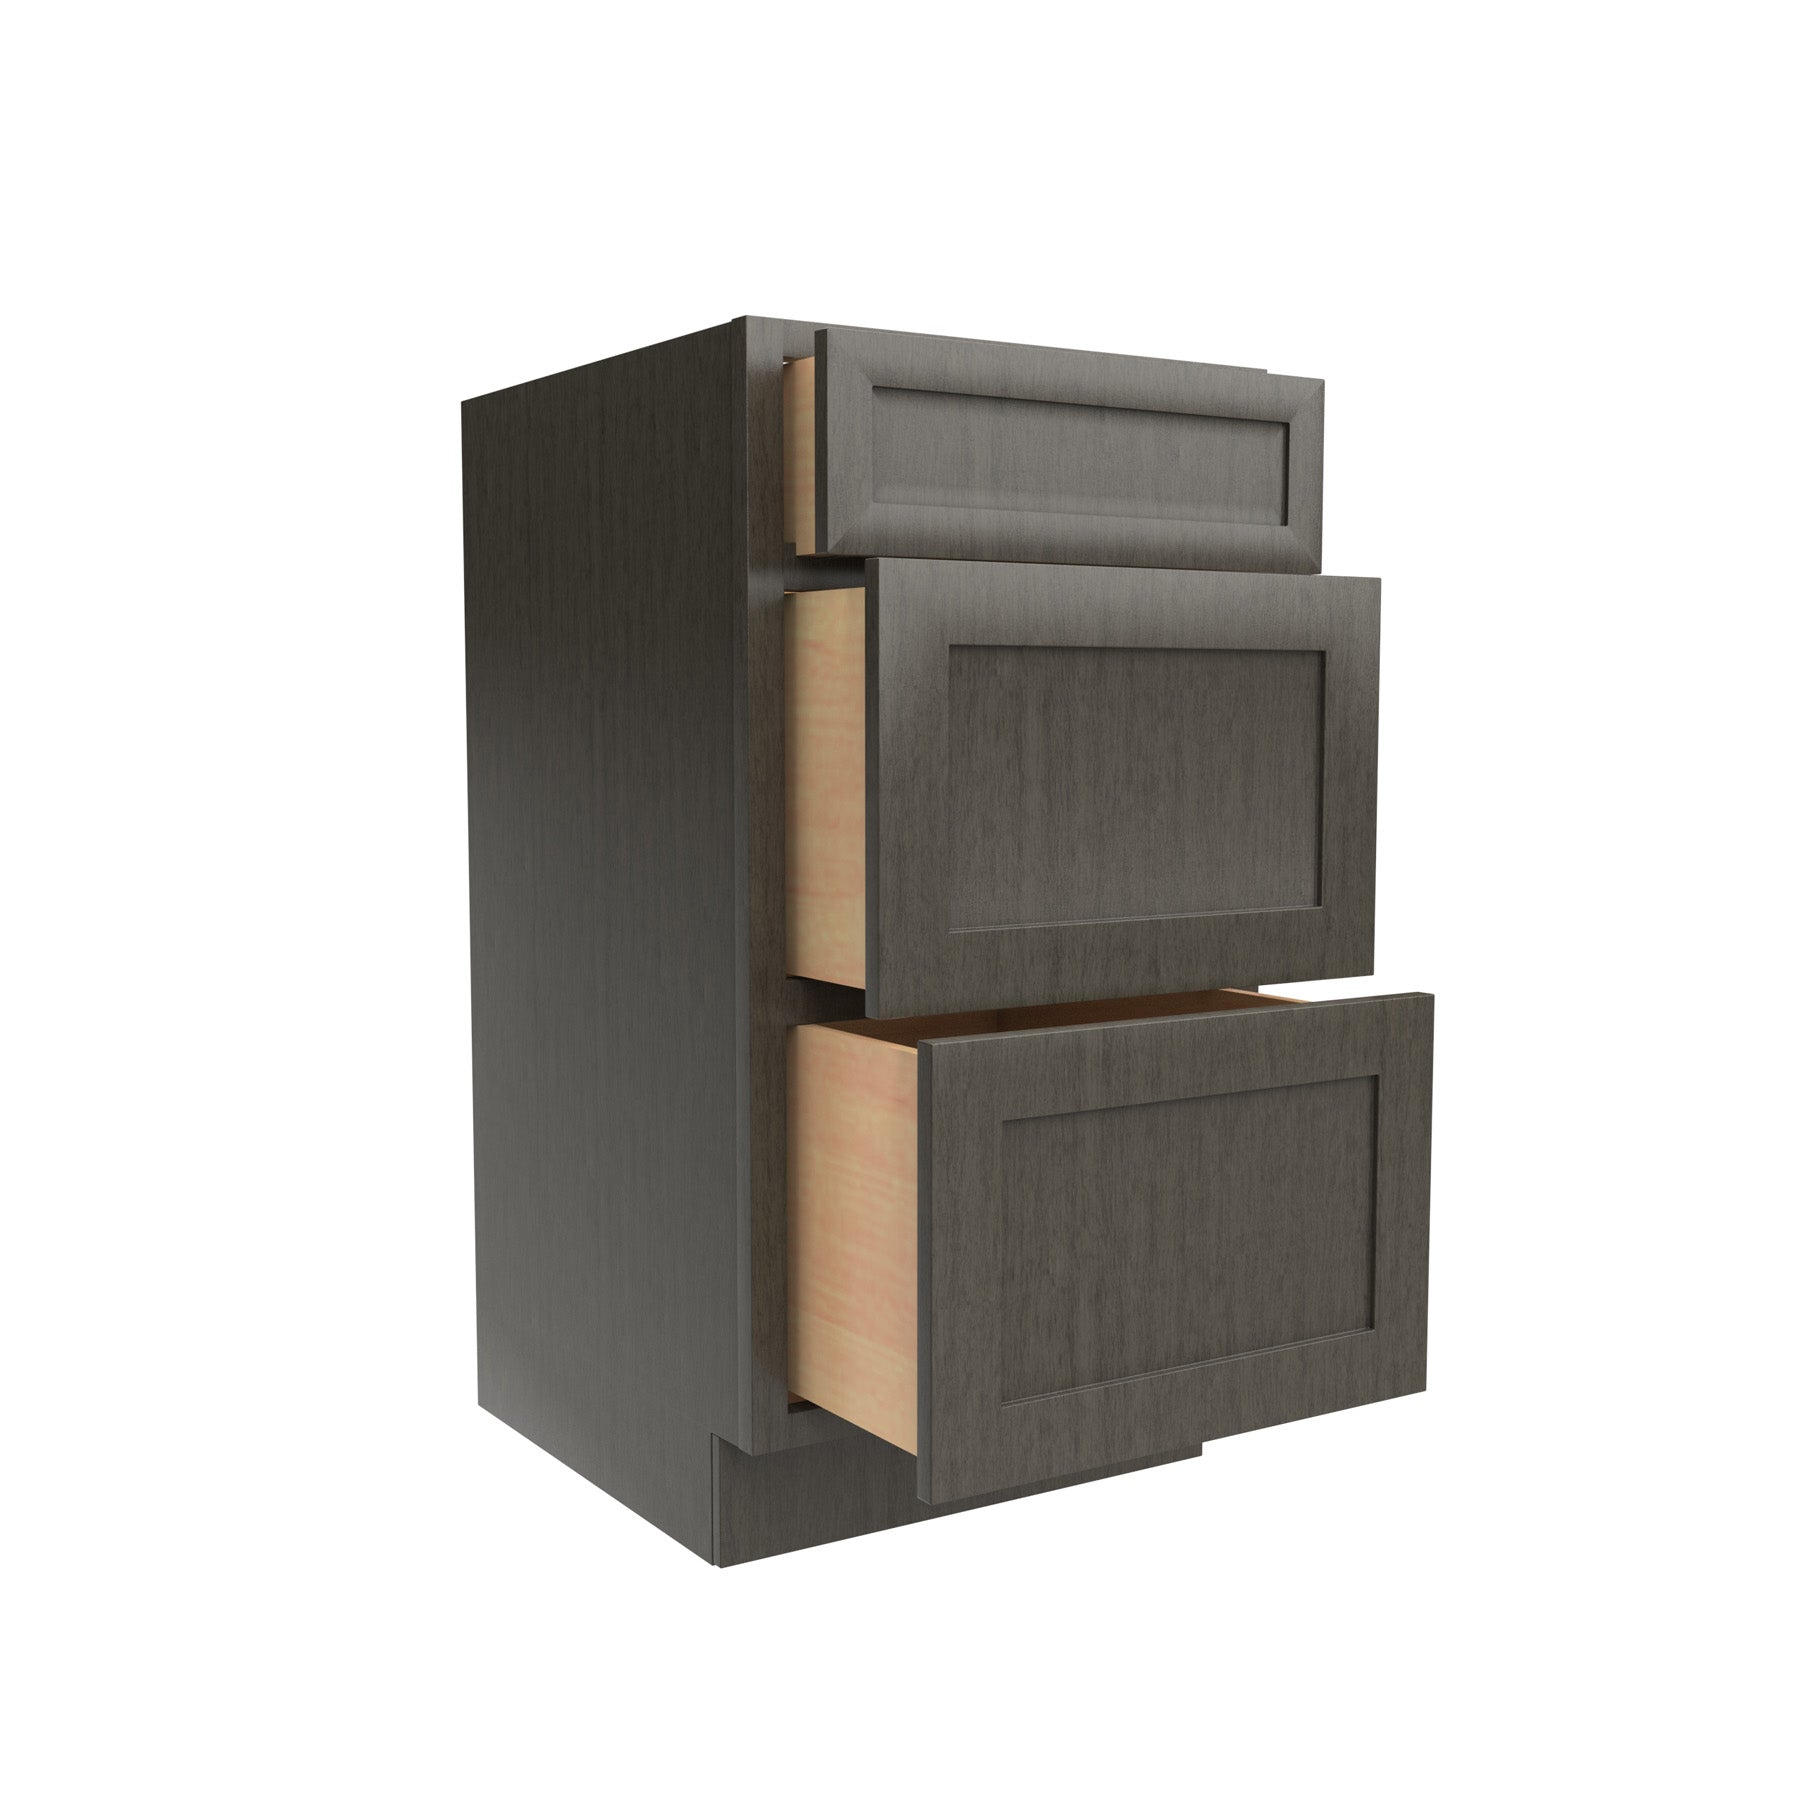 RTA - Elegant Smoky Grey - Vanity Drawer Base Cabinet | 18"W x 34.5"H x 21"D